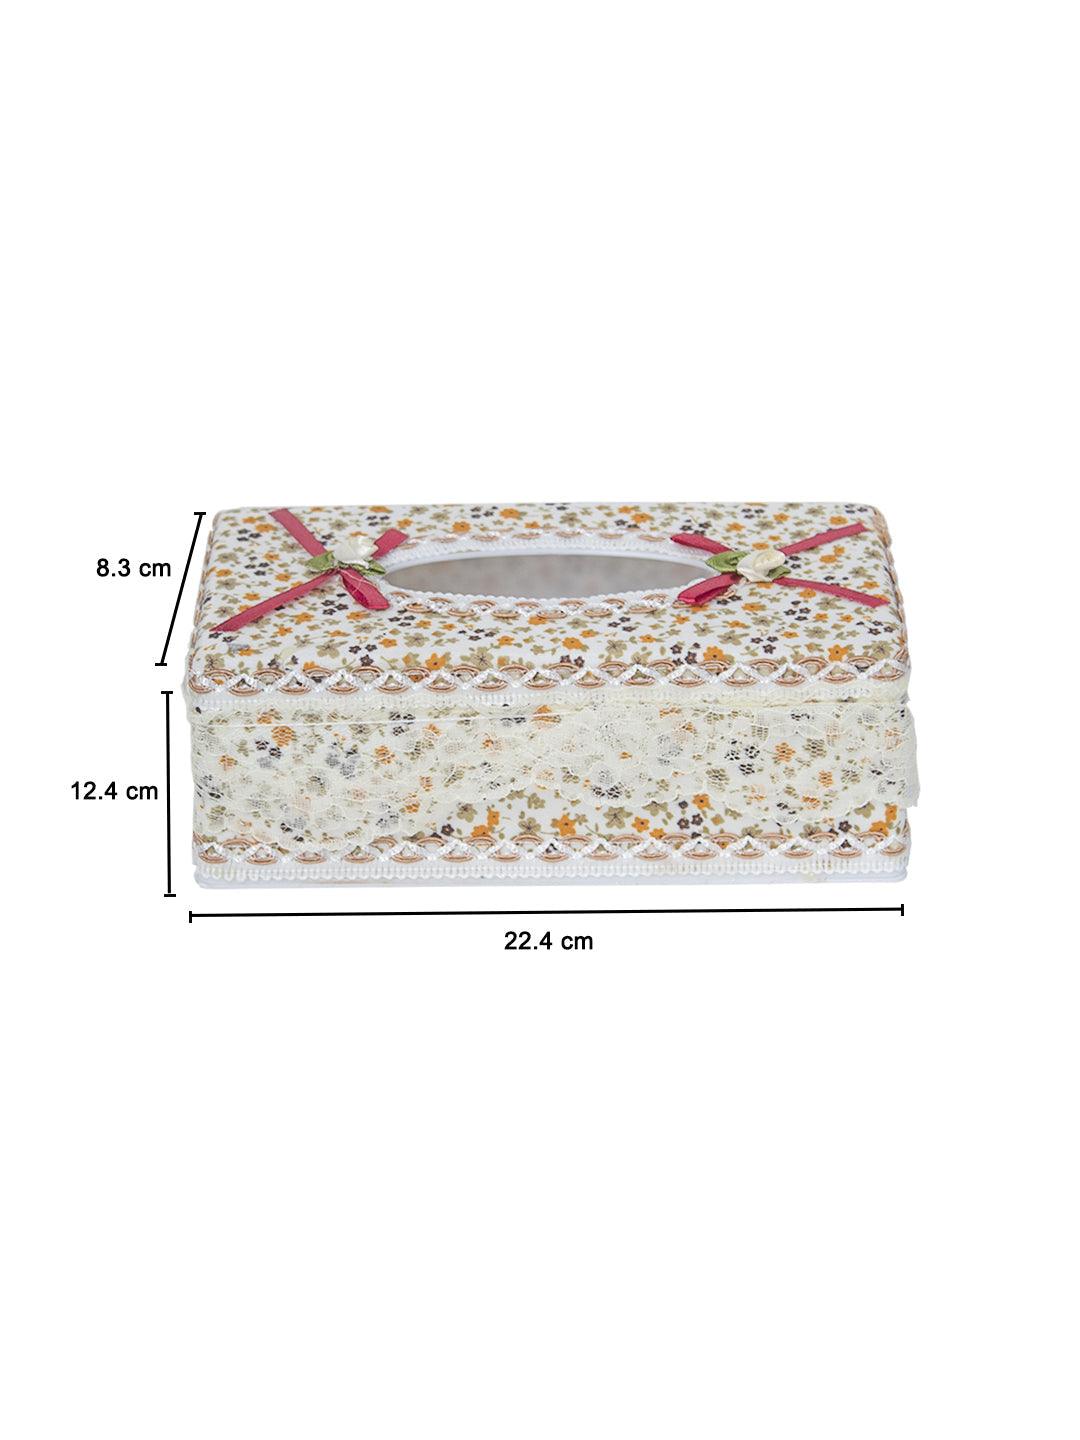 Multicolor Tissue Box - 22.4 X 12.4 X 8.3Cm - MARKET 99